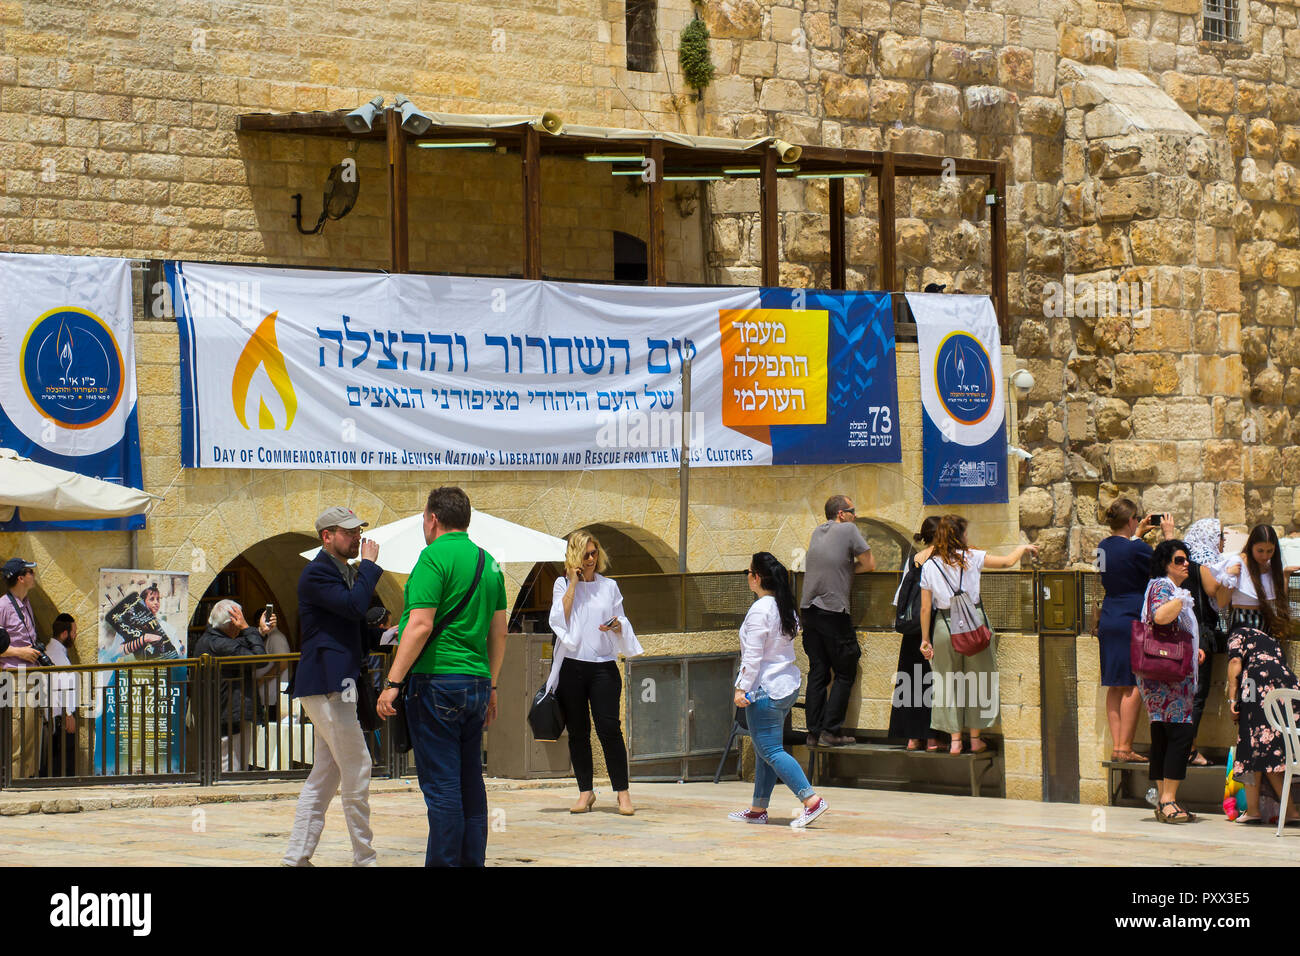 10 mai 2018 une grande affiche en hébreu annonçant une journée de commémoration de la libération du pays des Nazis pend sur le mur occidental à Jerusale Banque D'Images